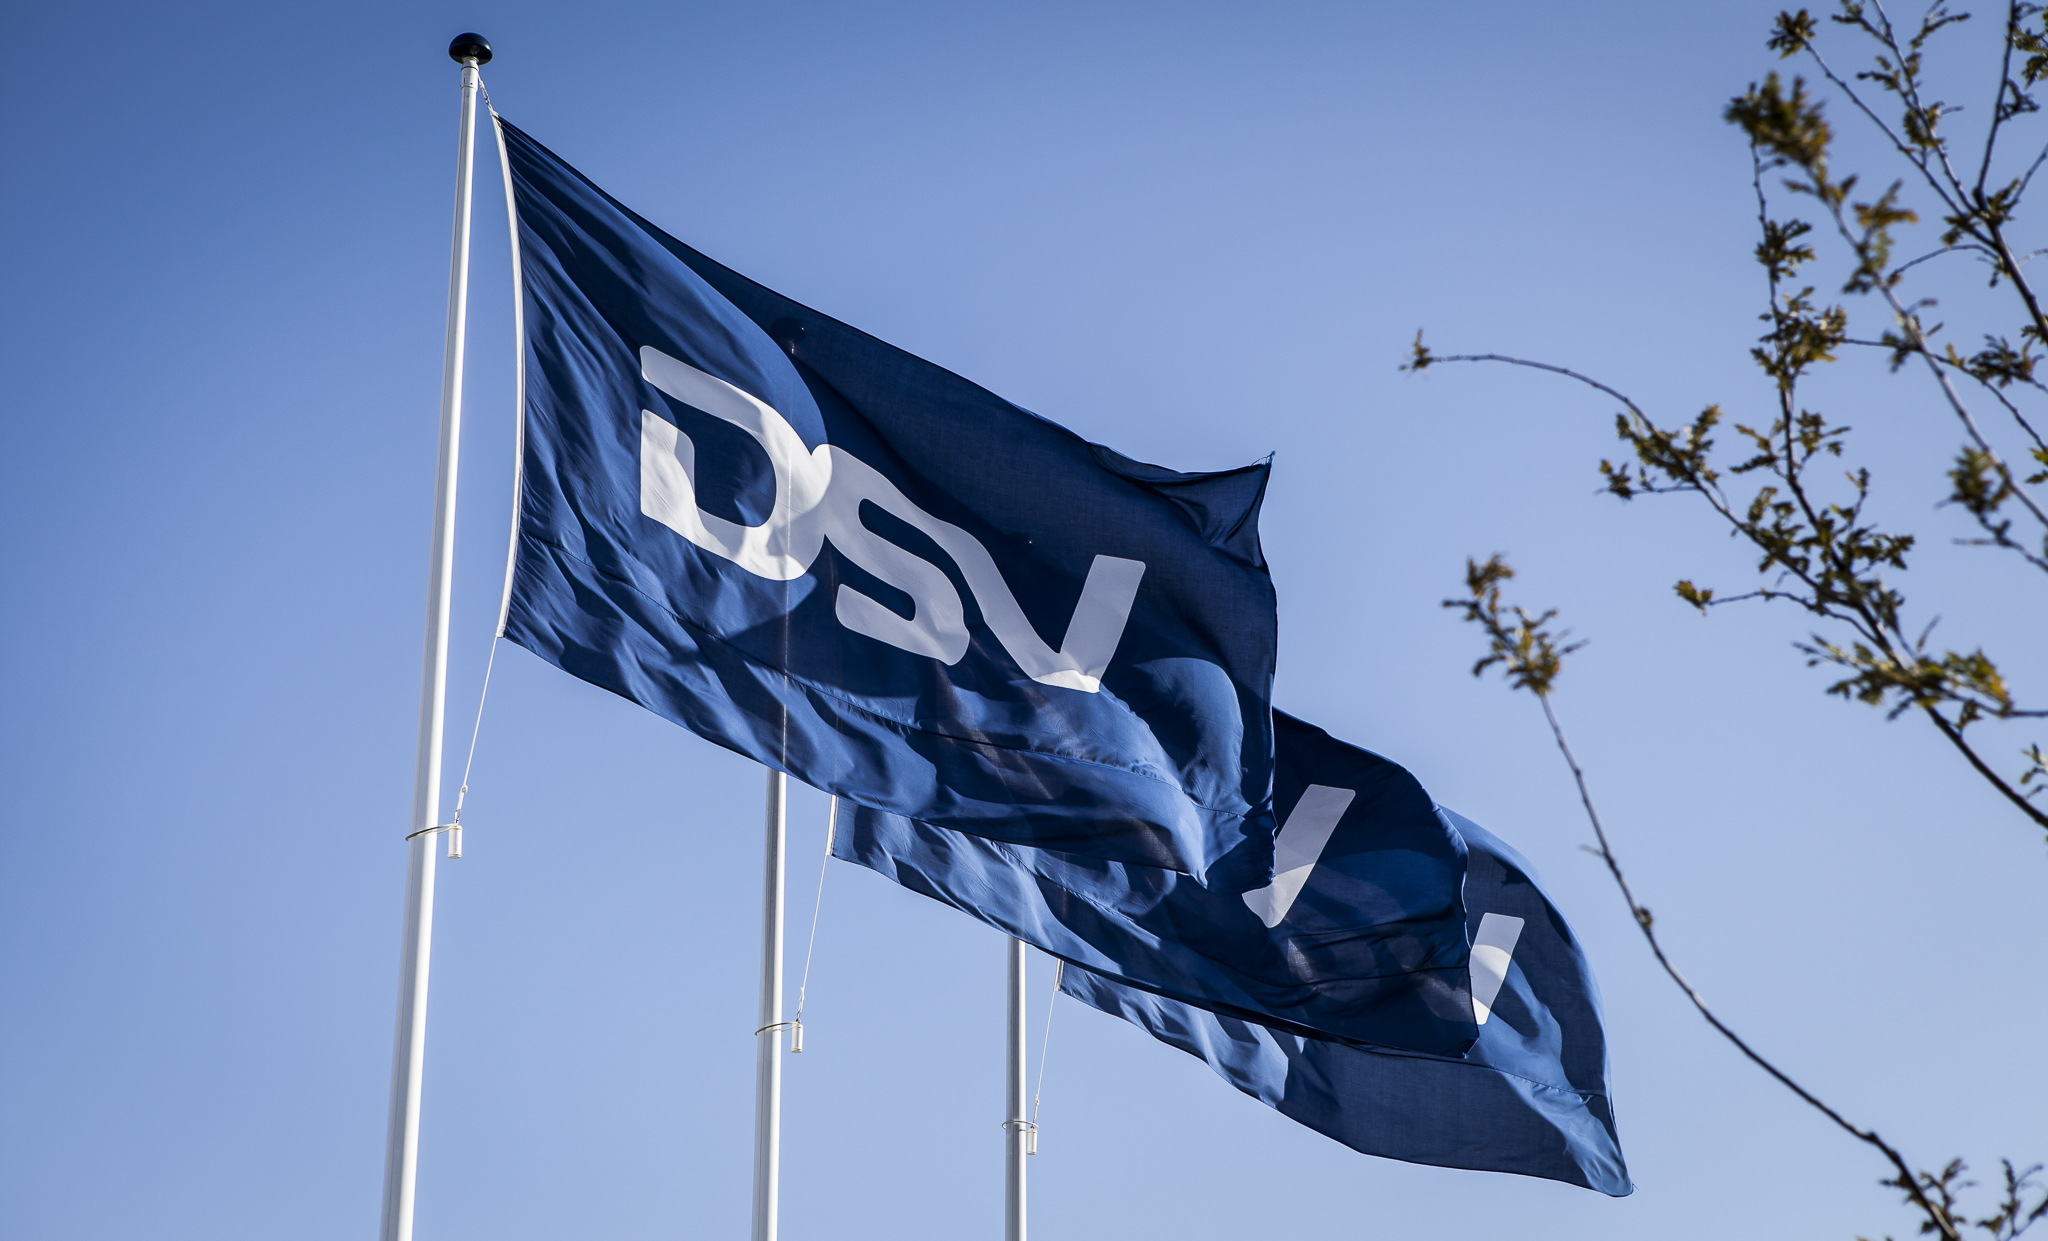 10 Mio. Euro Umsatz: Automotiver Großauftrag für DSV Österreich